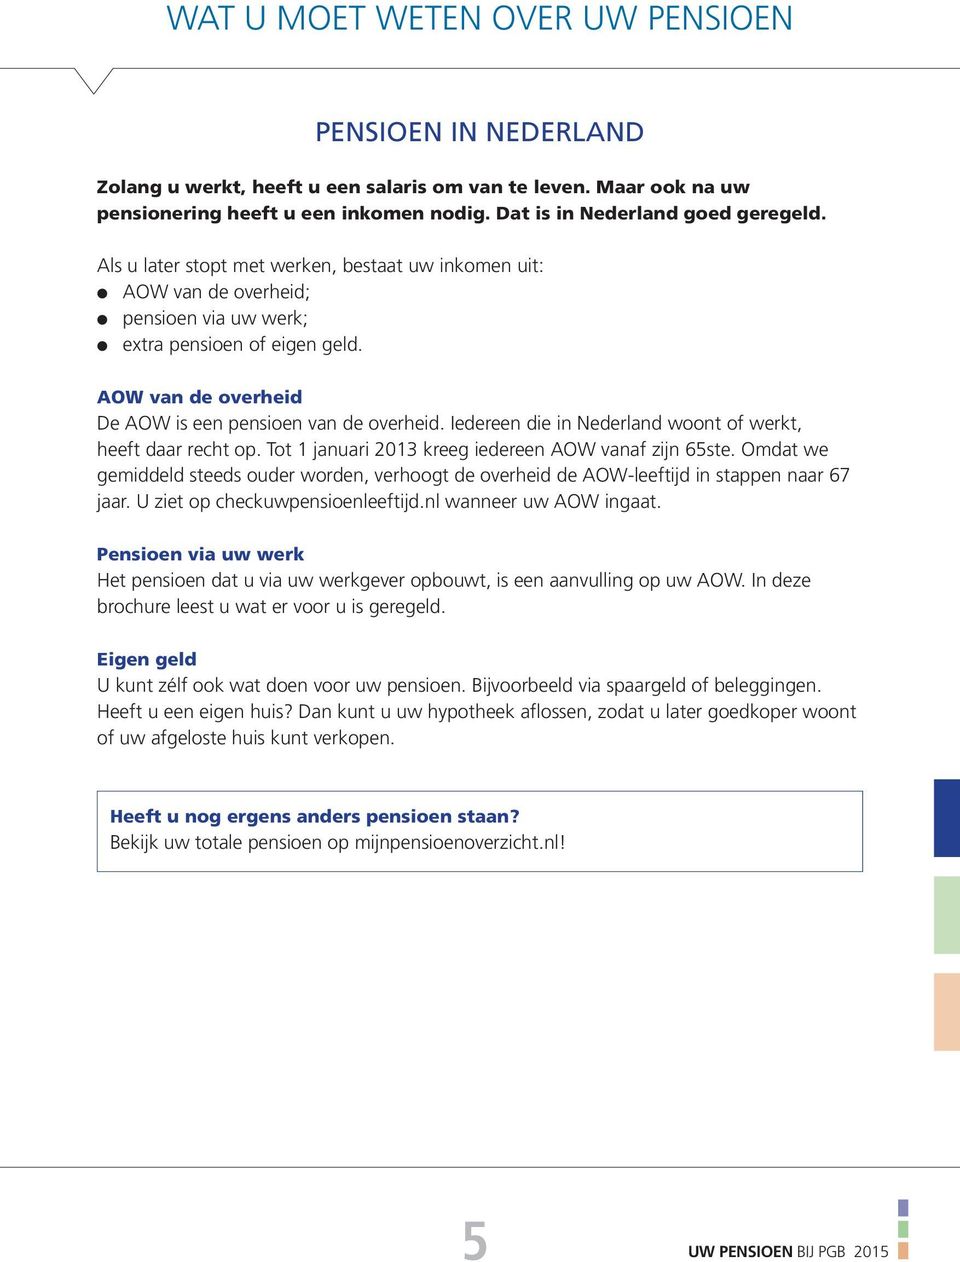 Iedereen die in Nederland woont of werkt, heeft daar recht op. Tot 1 januari 2013 kreeg iedereen AOW vanaf zijn 65ste.